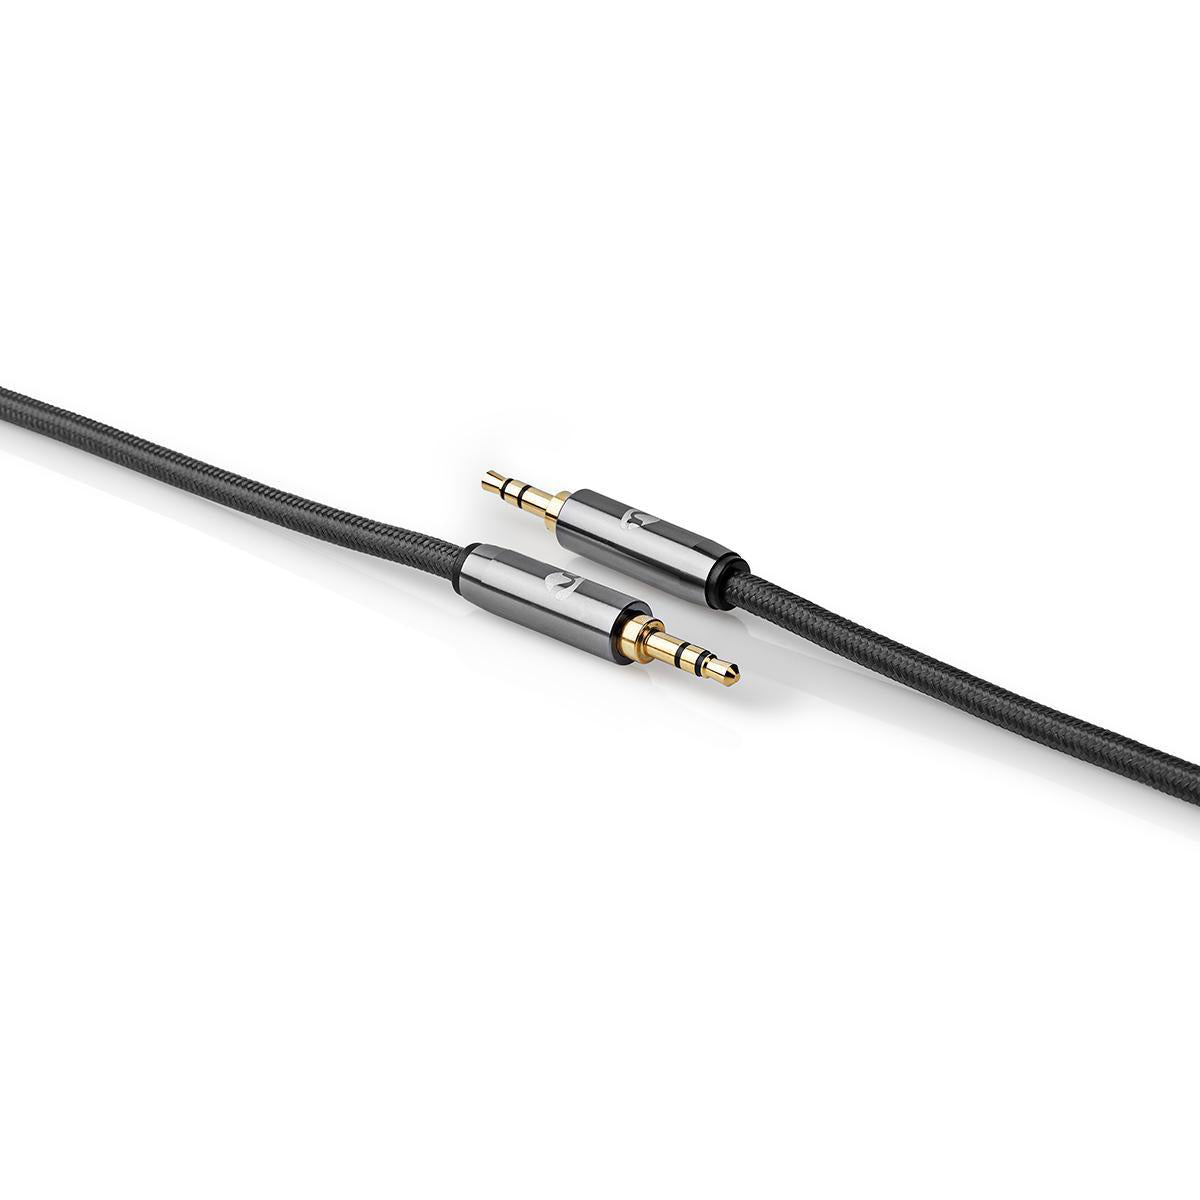 Stereo-Audiokabel | 3.5 mm Stecker | 3.5 mm Stecker | Vergoldet | 5.00 m | Rund | Grau / Gun Metal Grau | Verpackung mit Sichtfenster